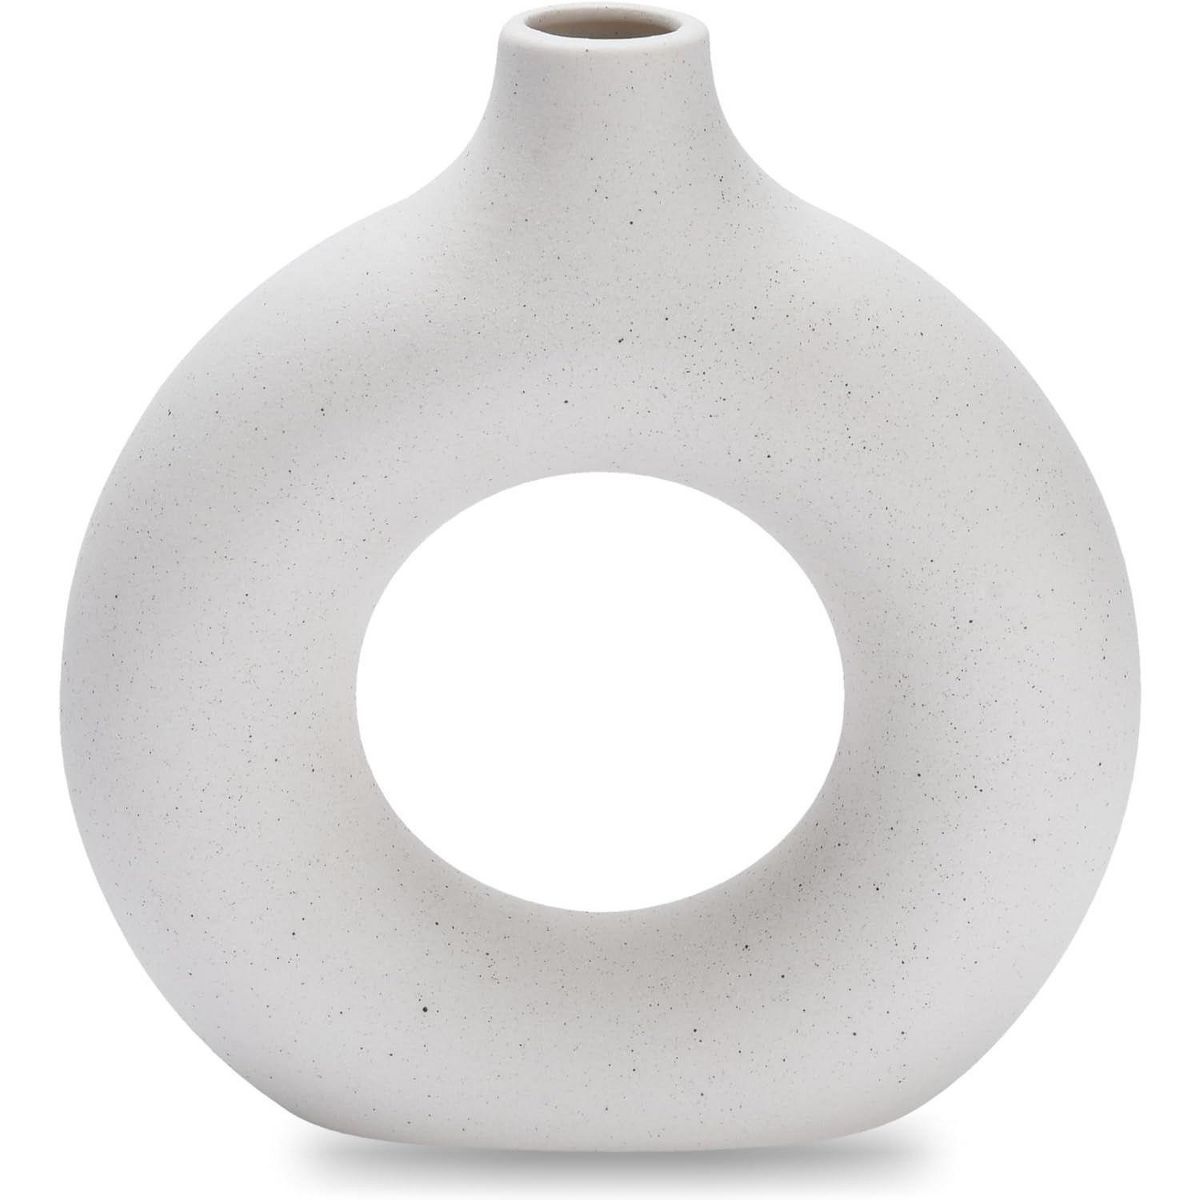 Hallops | Ceramic Vase for Modern Home Décor - White | Target